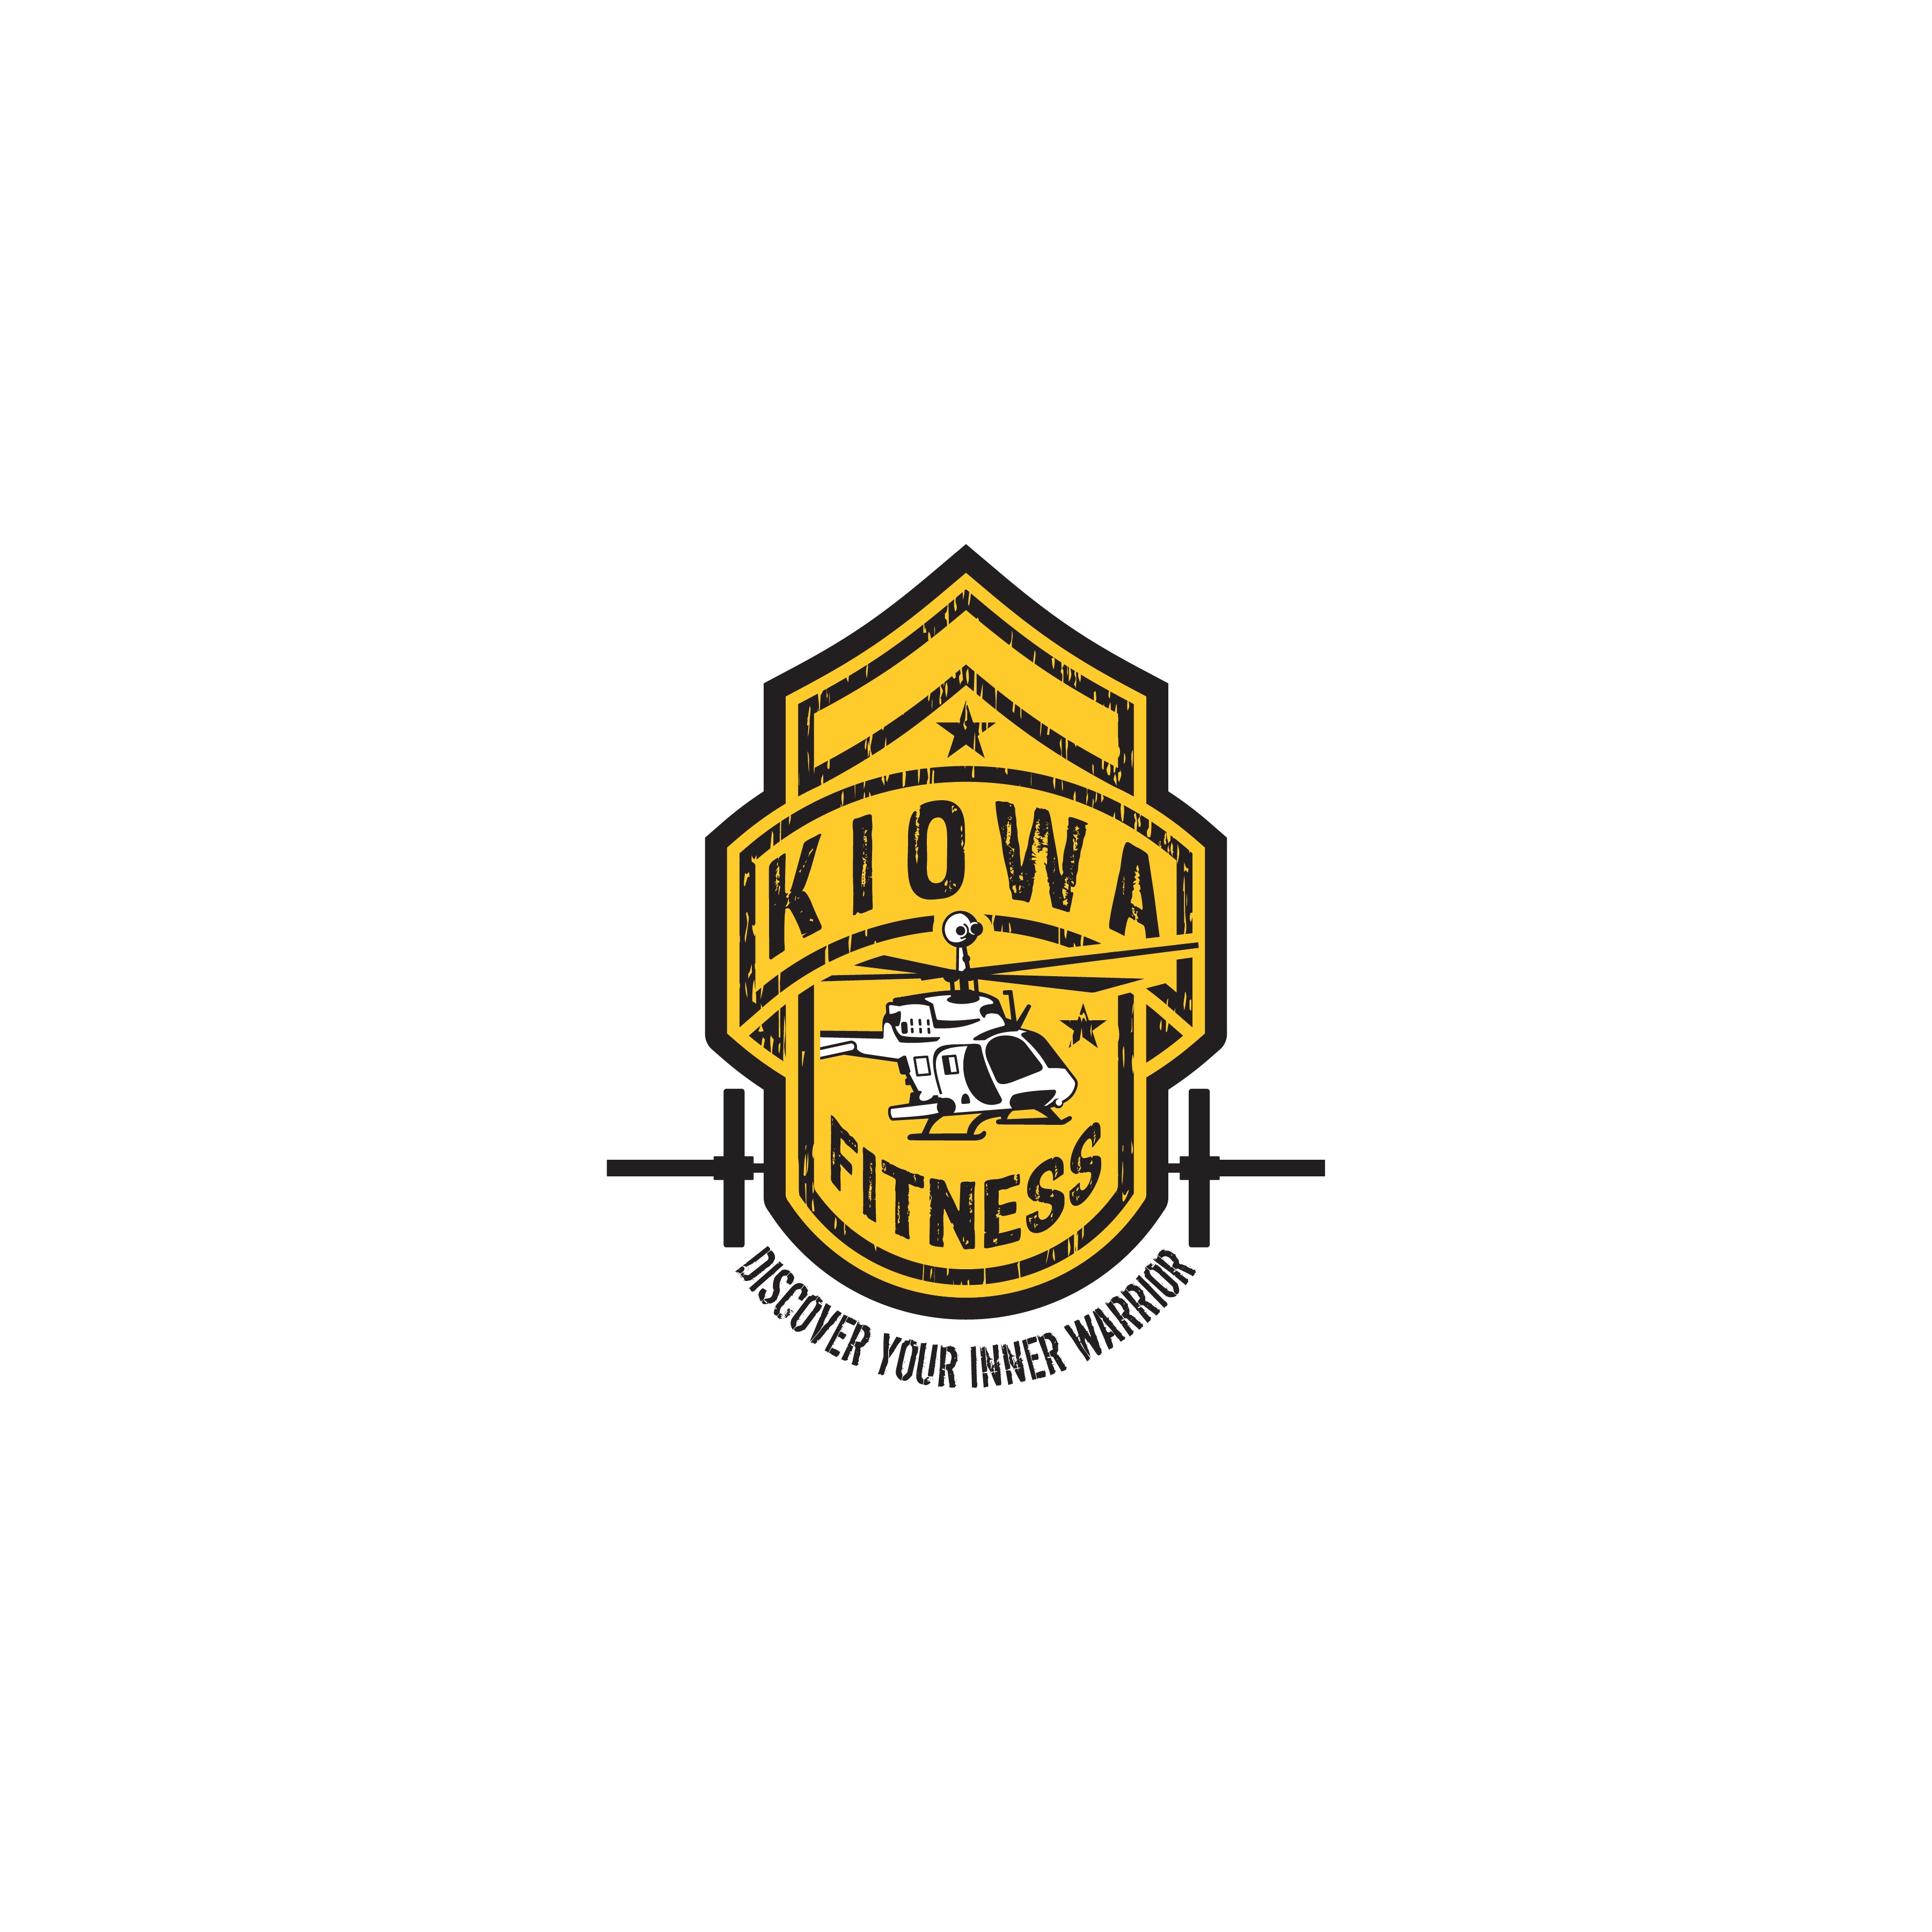 Kiowa Fitness logo